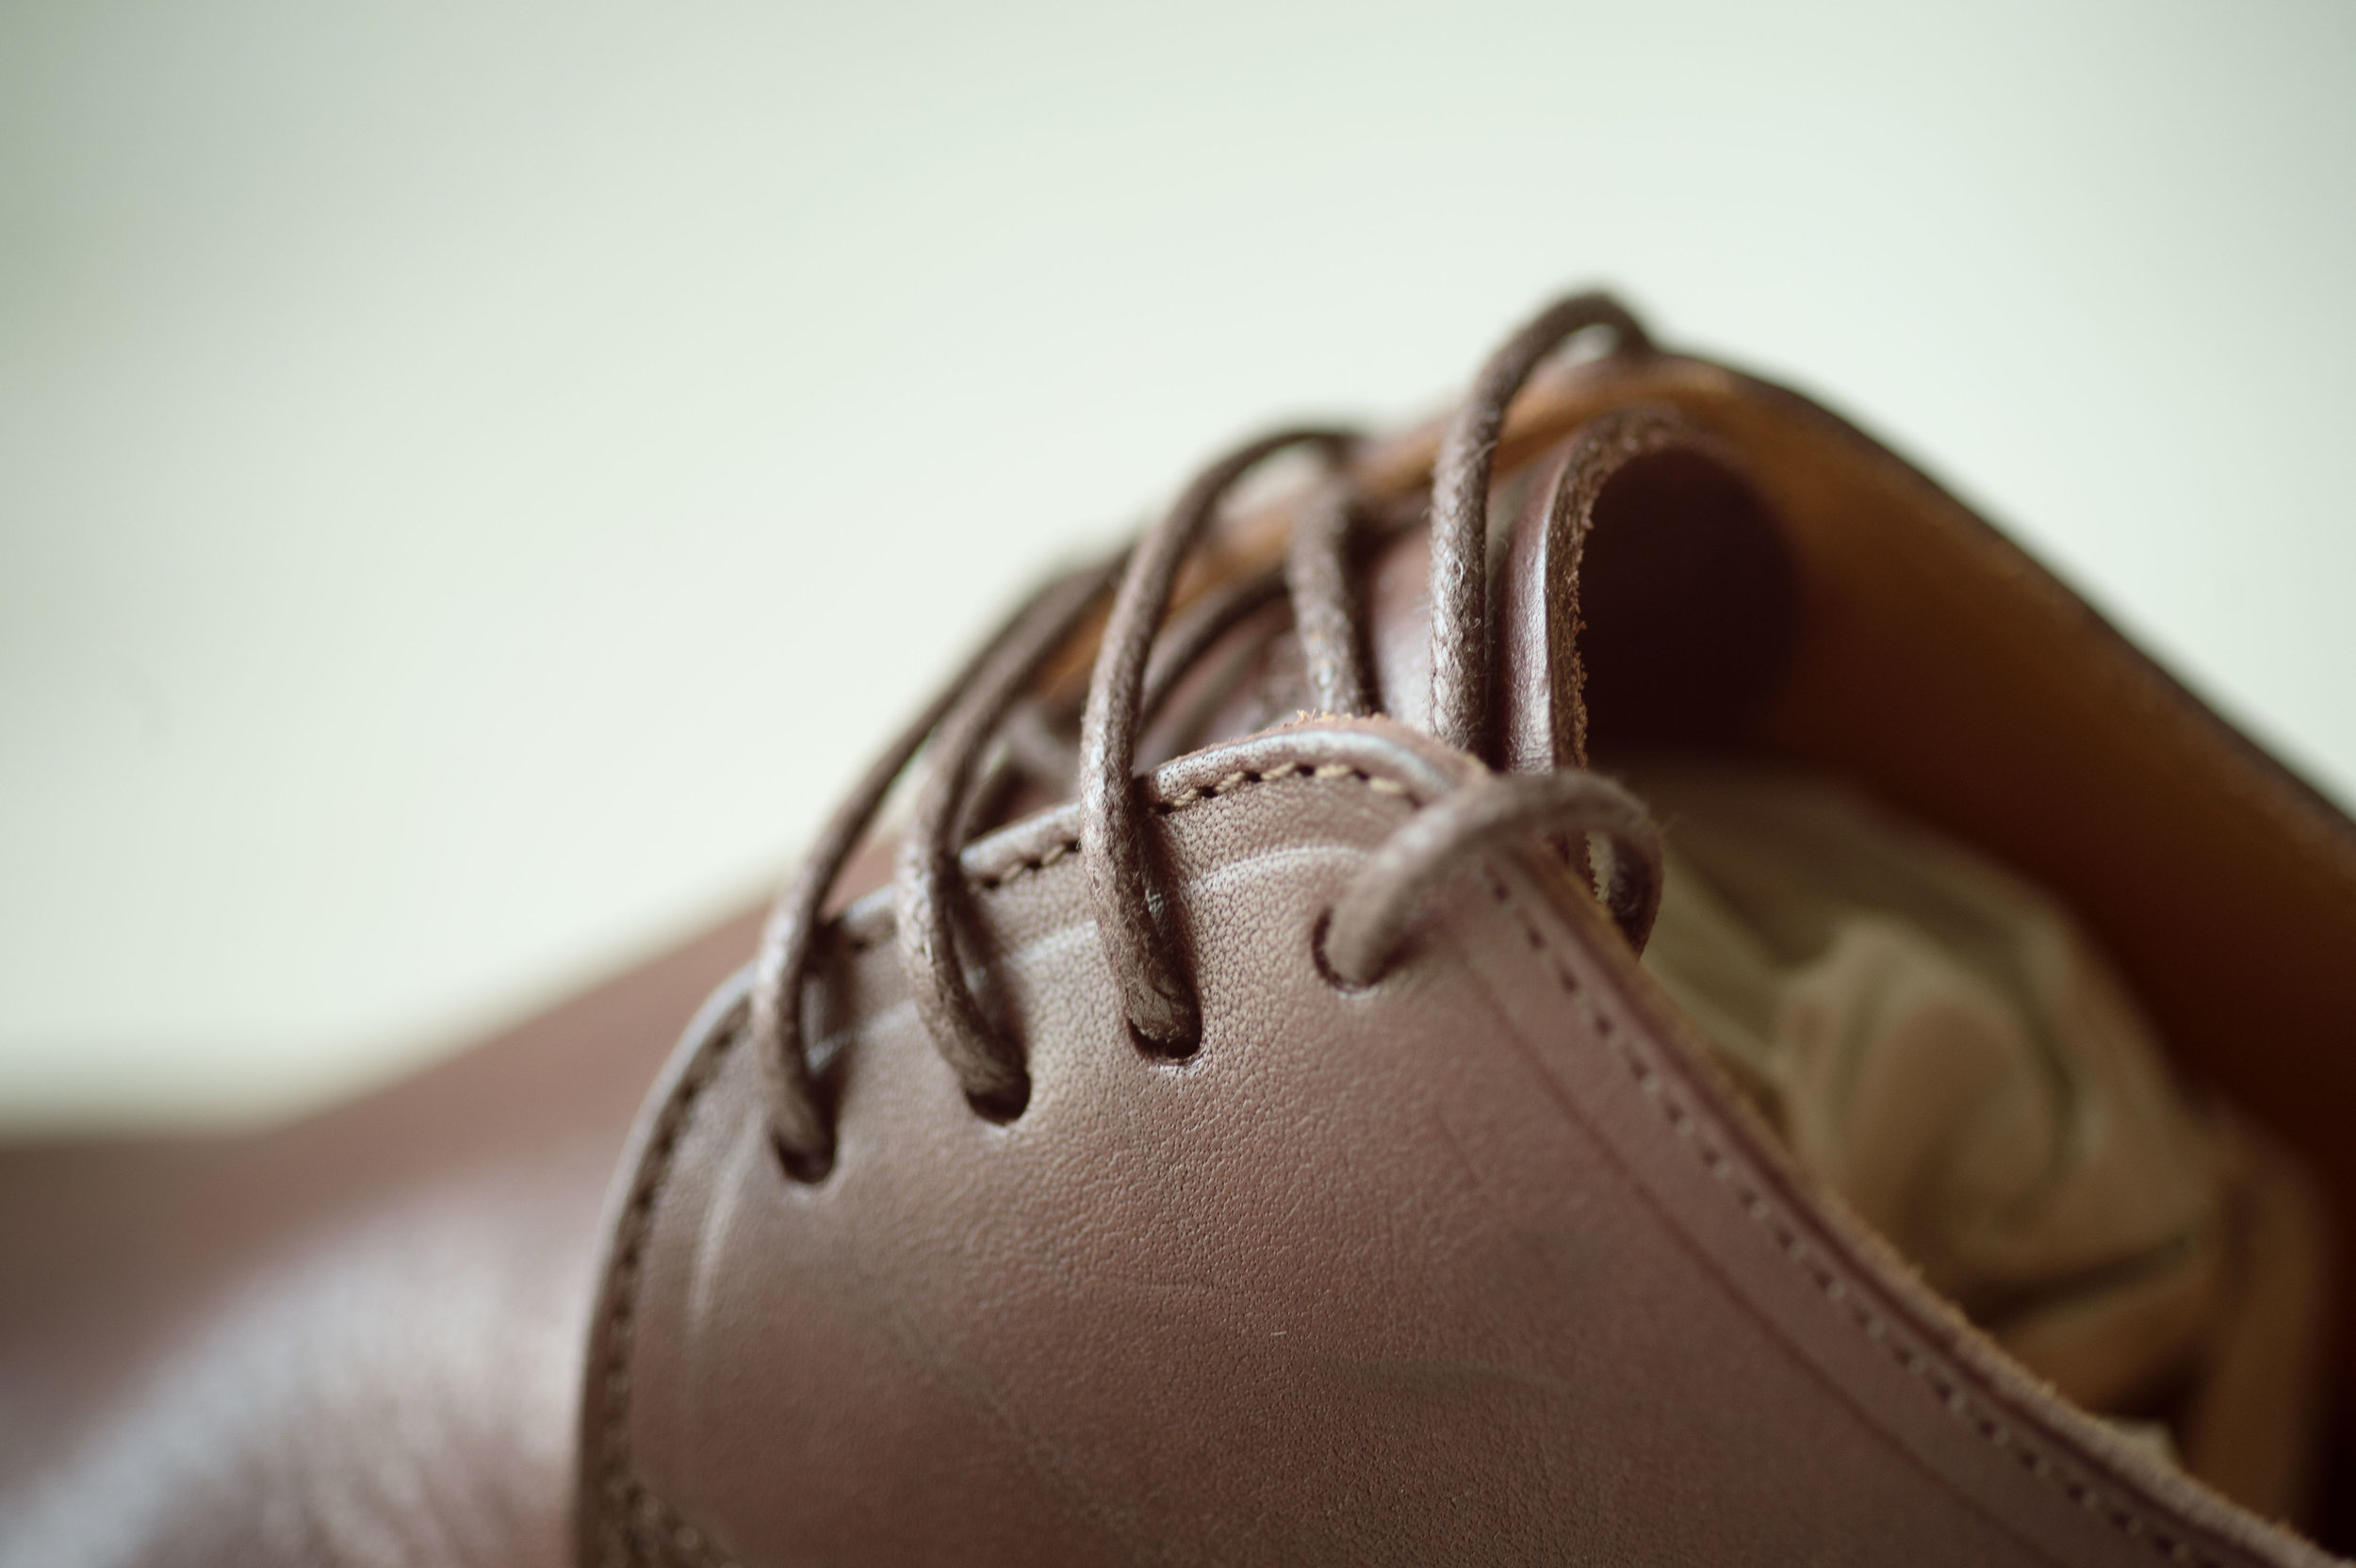 Barefoot_runner_office_shoes_thetrinerd_aniko_towers_photo-15.jpg